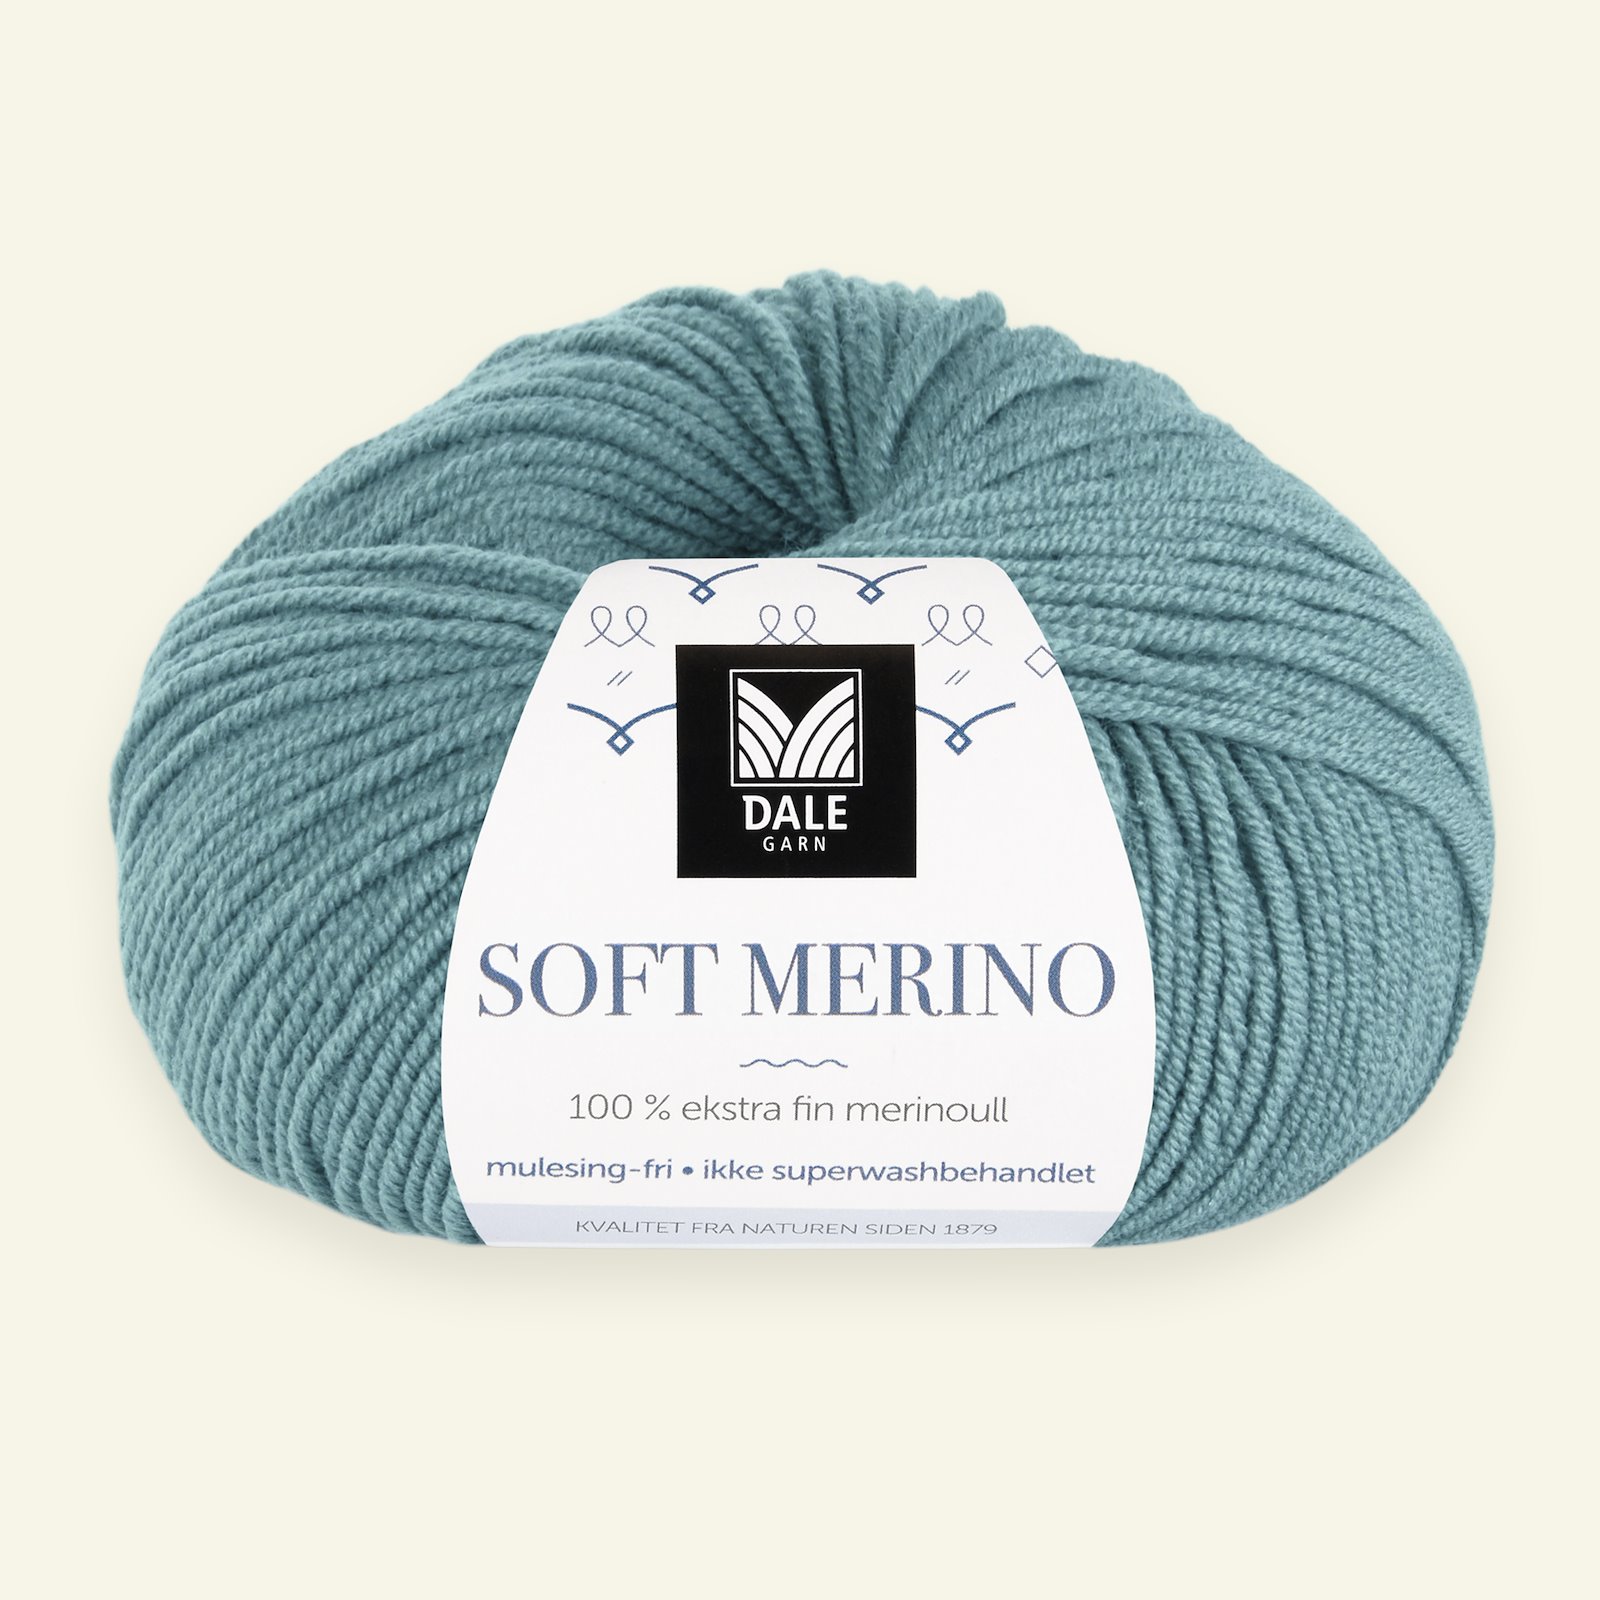 Dale Garn, 100% ekstra fint merinogarn "Soft Merino", Aquagrønn (3012) 90000333_pack